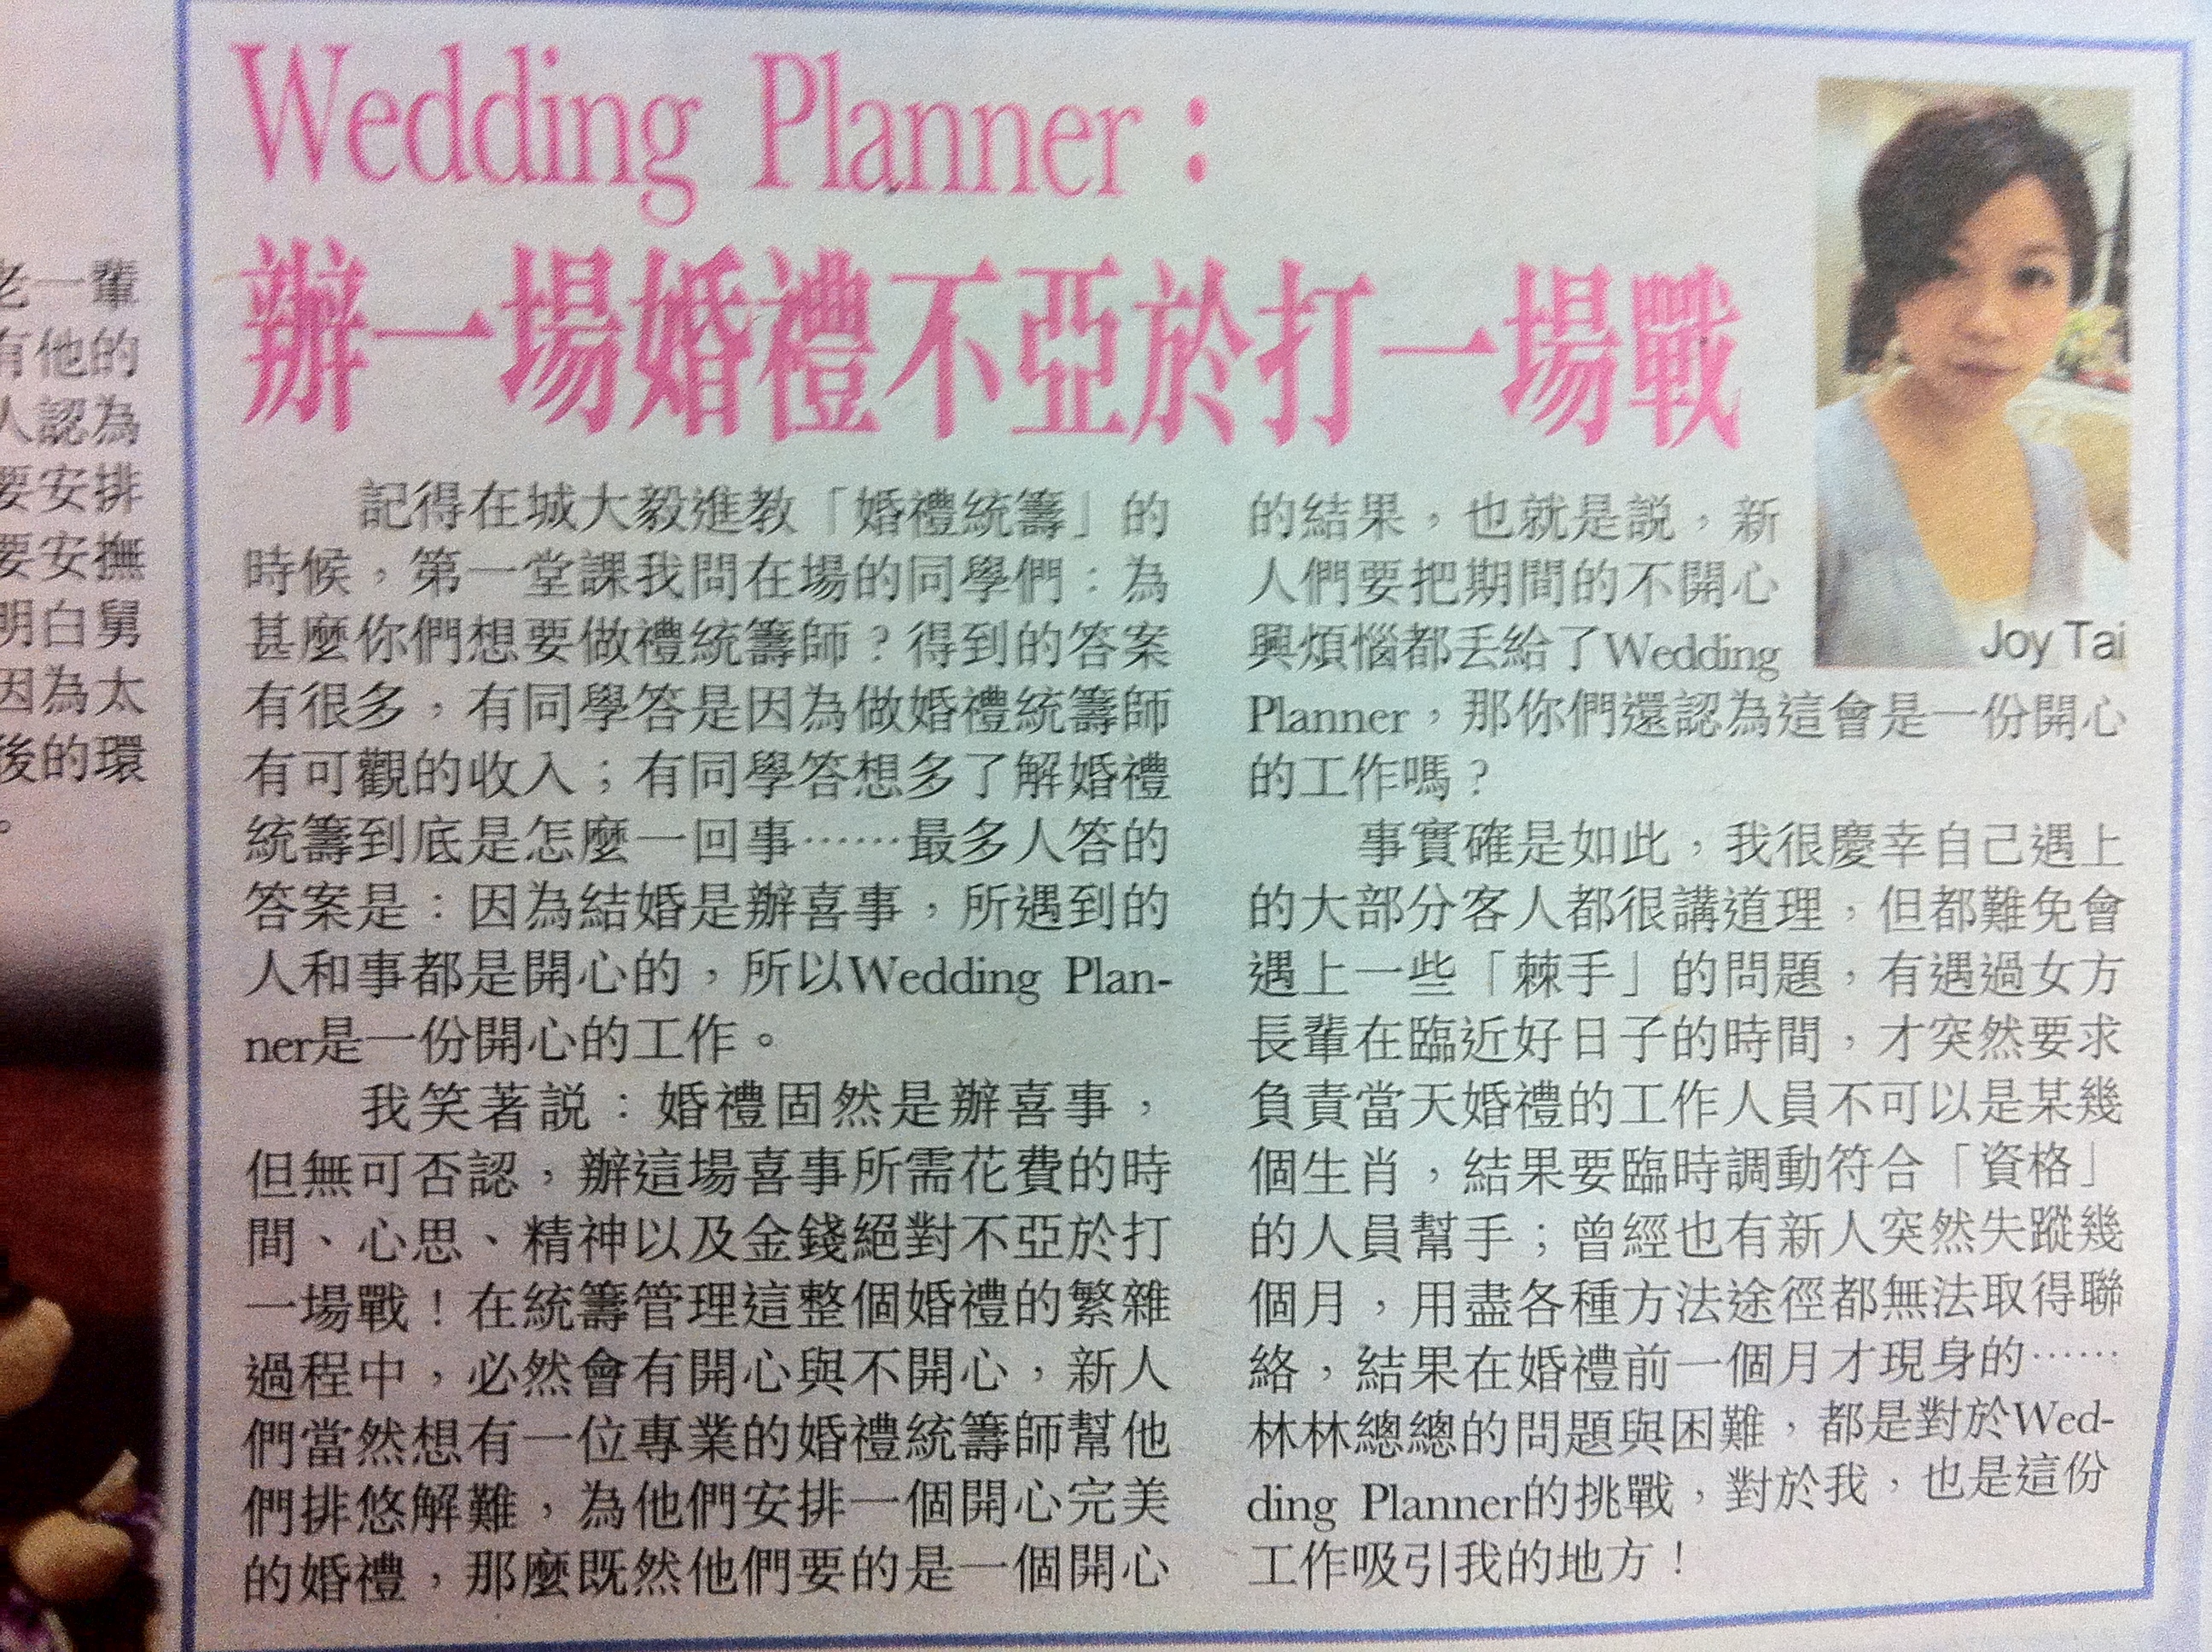 婚禮統籌師媒體報導Joy Tai: 新晚報報導